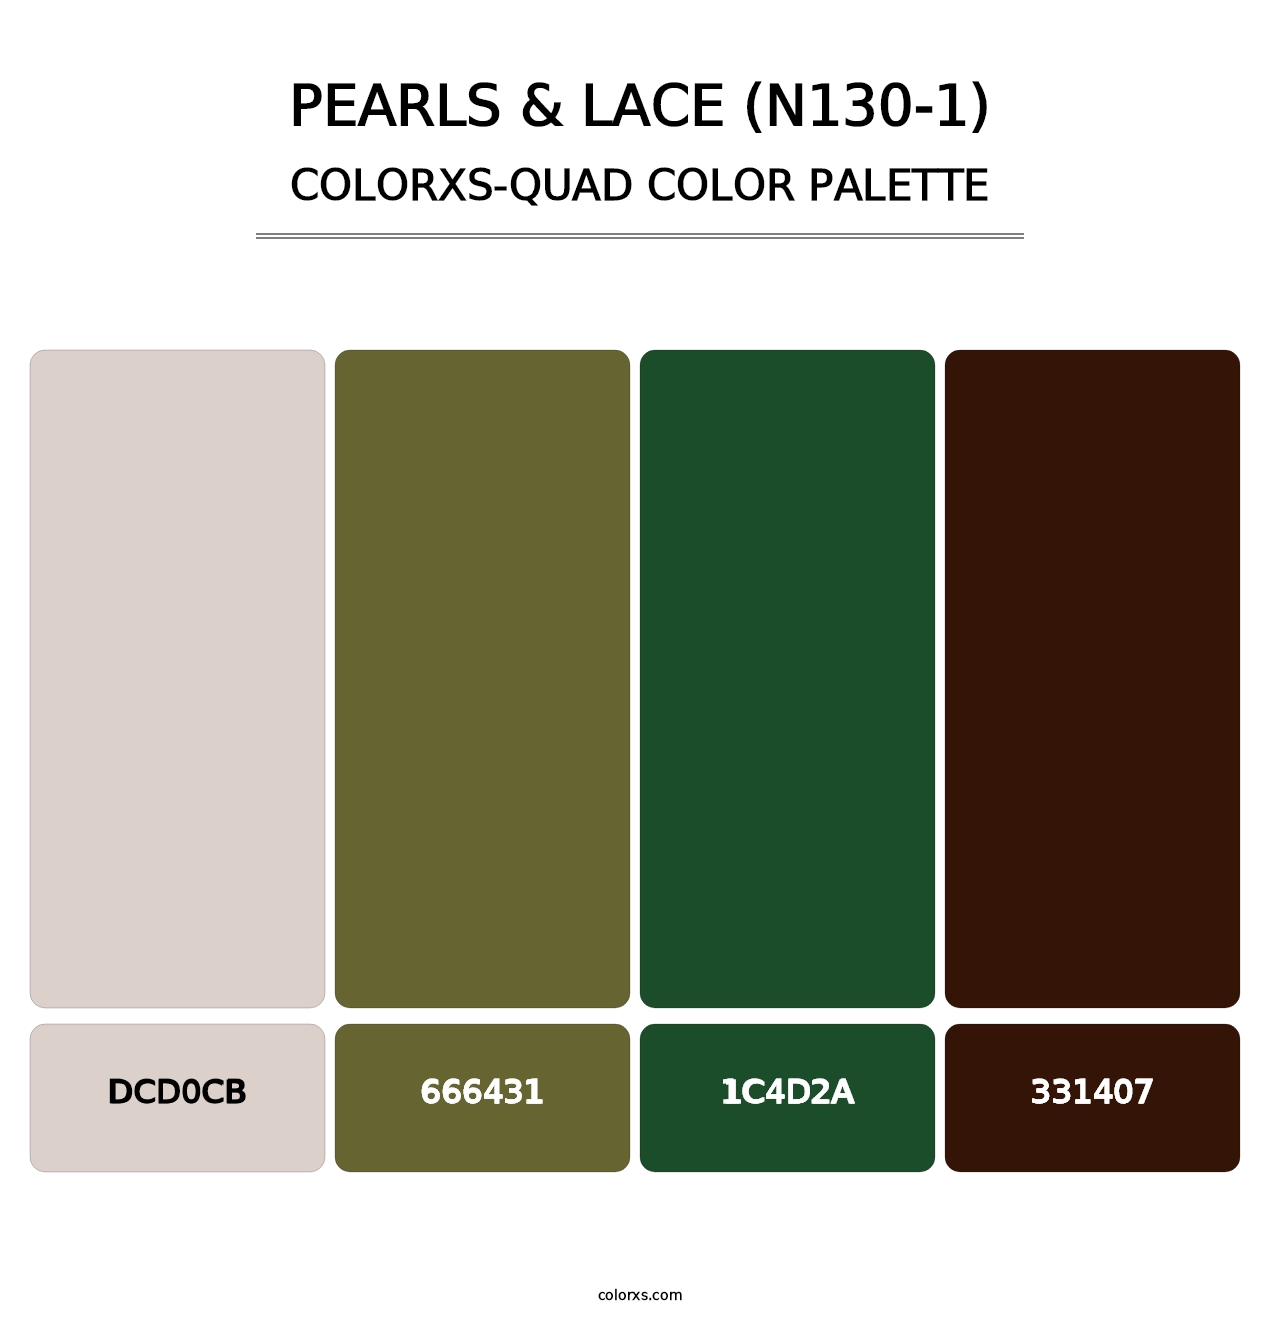 Pearls & Lace (N130-1) - Colorxs Quad Palette